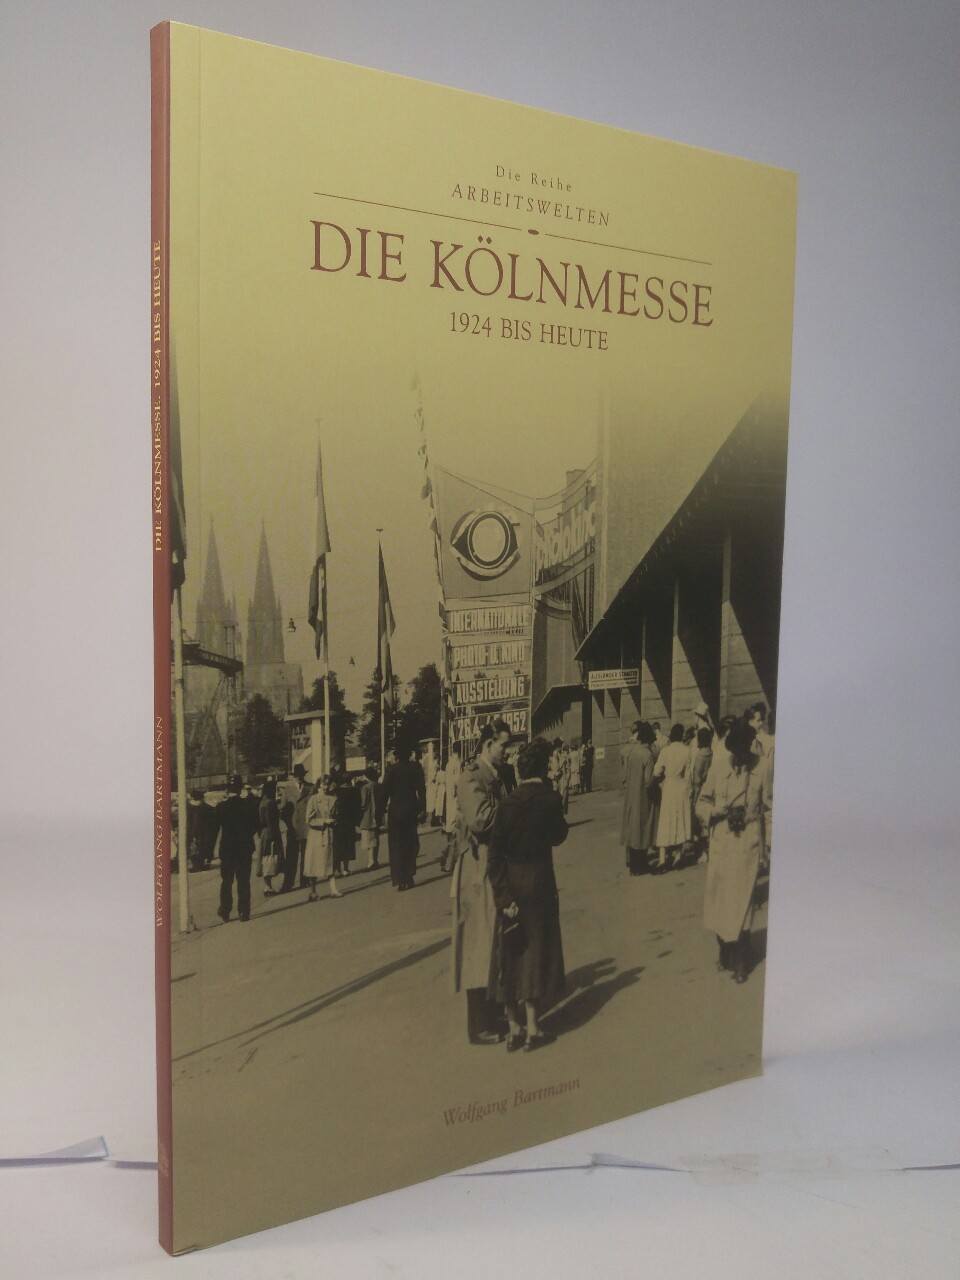 Die Kölnmesse 1924 bis heute. Die Reihe Arbeitswelten. - Bartmann, Wolfgang